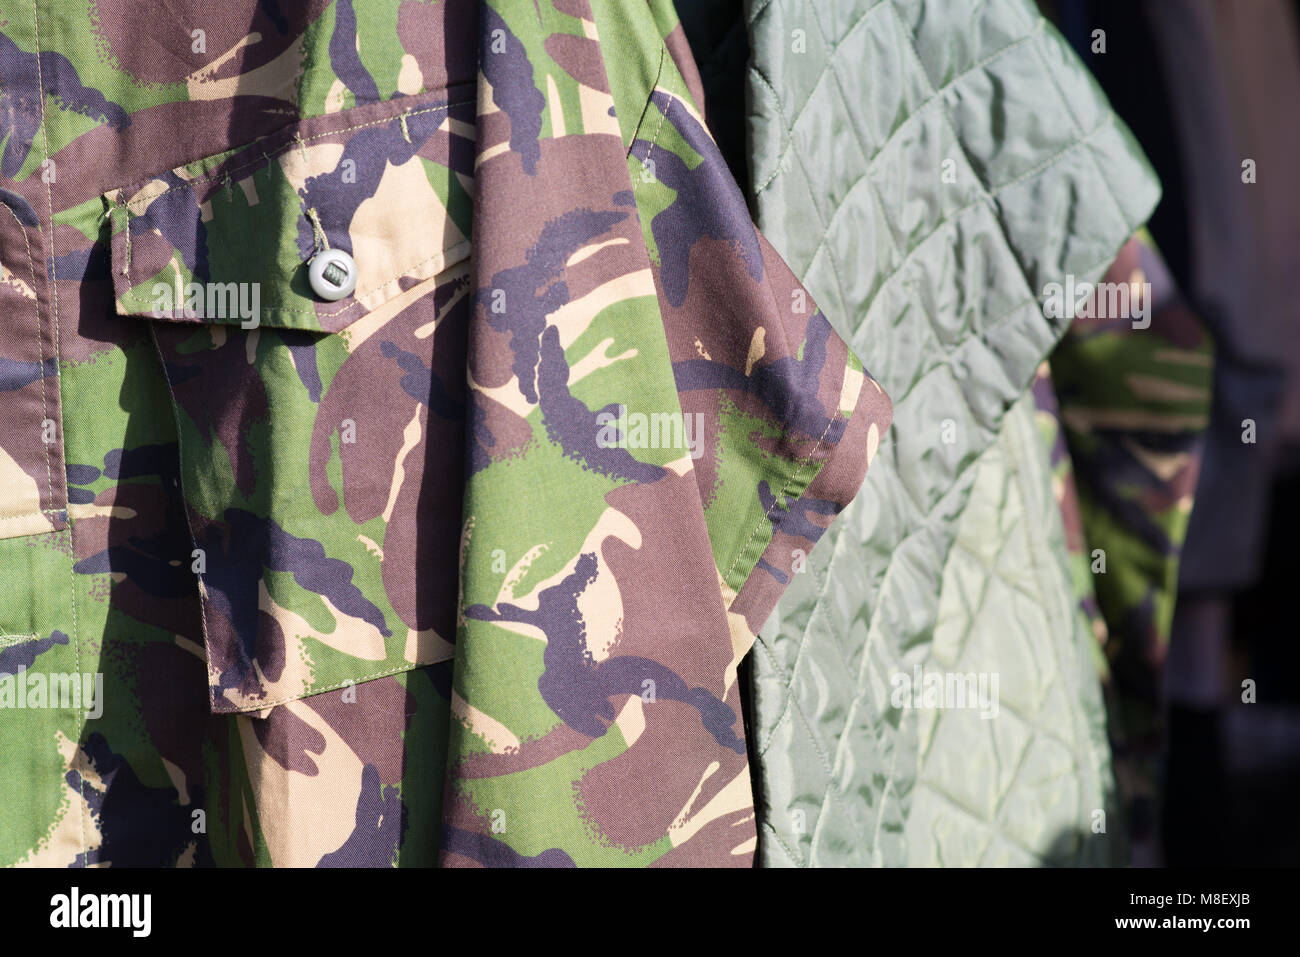 Veste militaire camouflée avec veste matelassée en arrière-plan Photo Stock  - Alamy